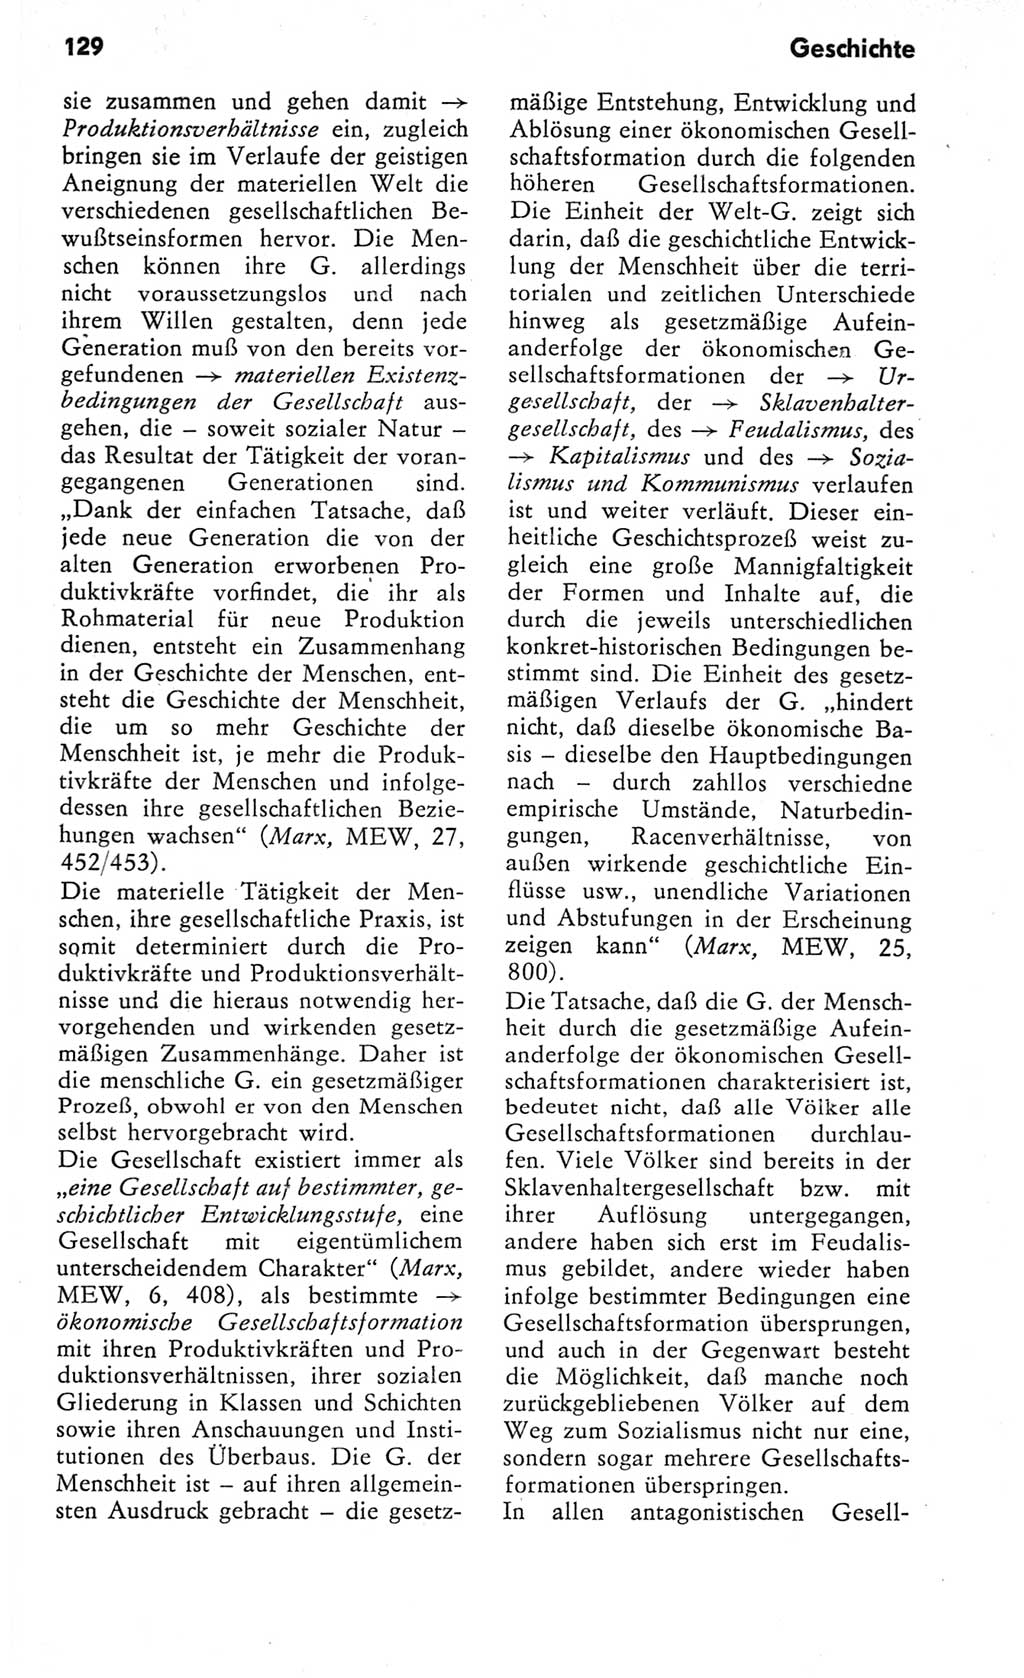 Kleines Wörterbuch der marxistisch-leninistischen Philosophie [Deutsche Demokratische Republik (DDR)] 1982, Seite 129 (Kl. Wb. ML Phil. DDR 1982, S. 129)